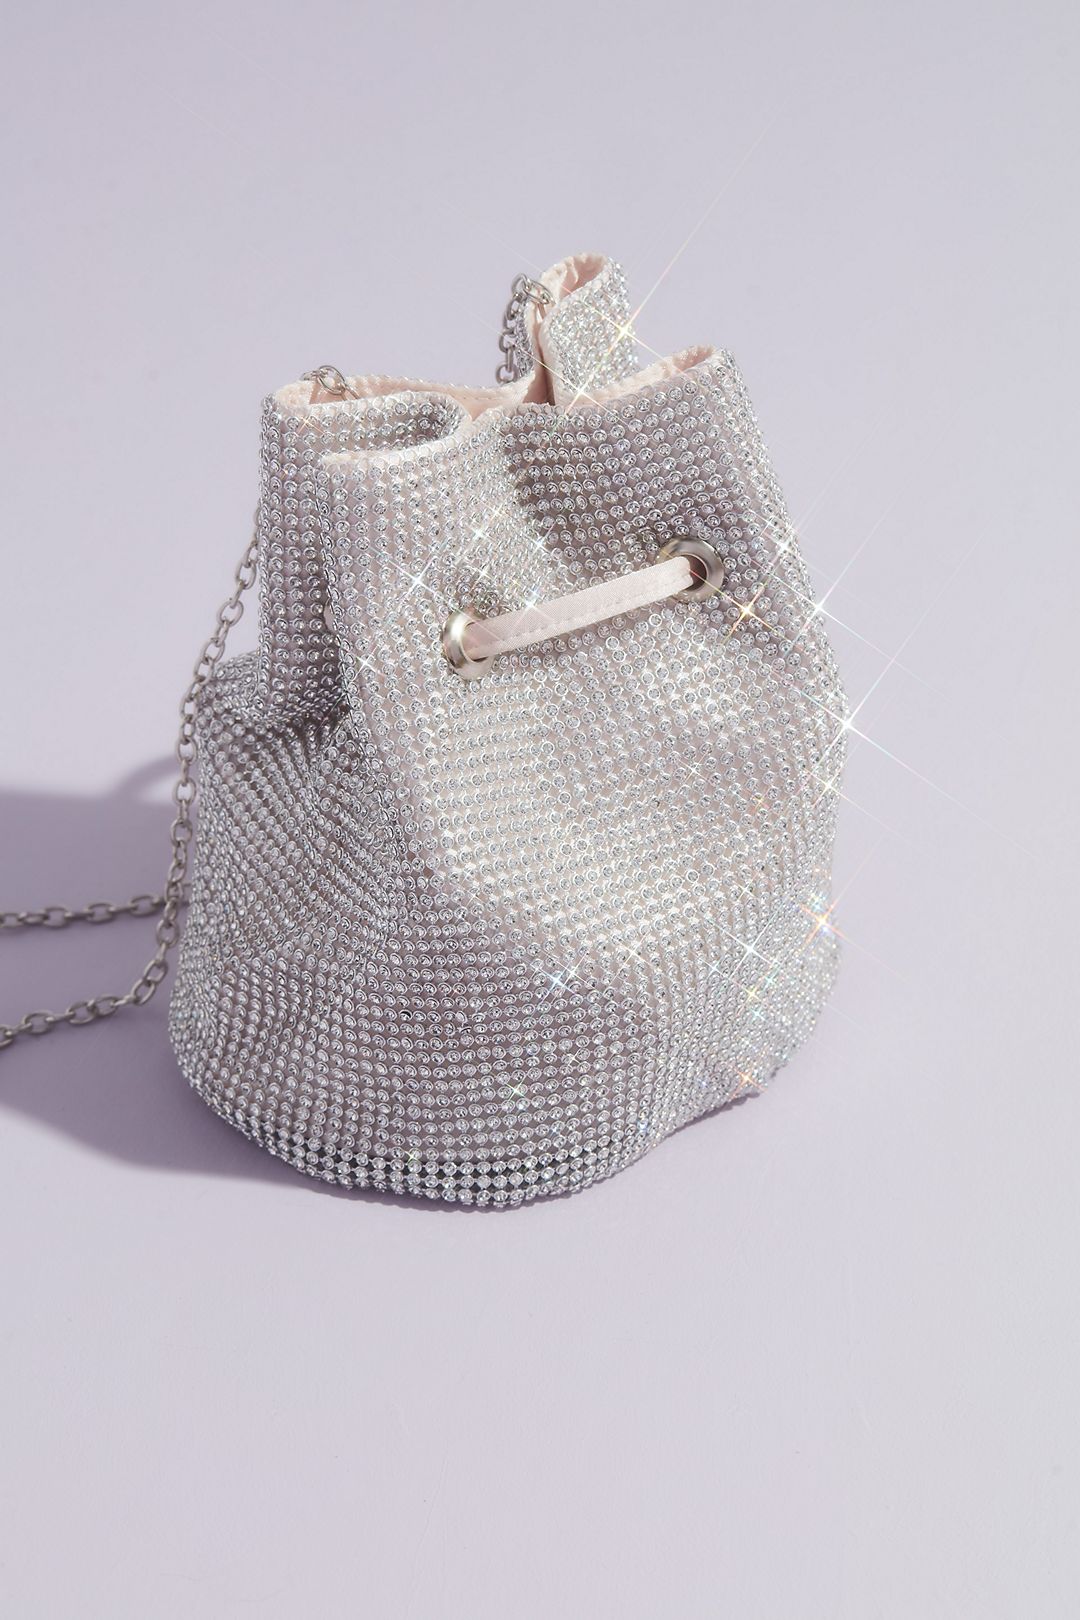 Crystal Mesh Bucket Handbags